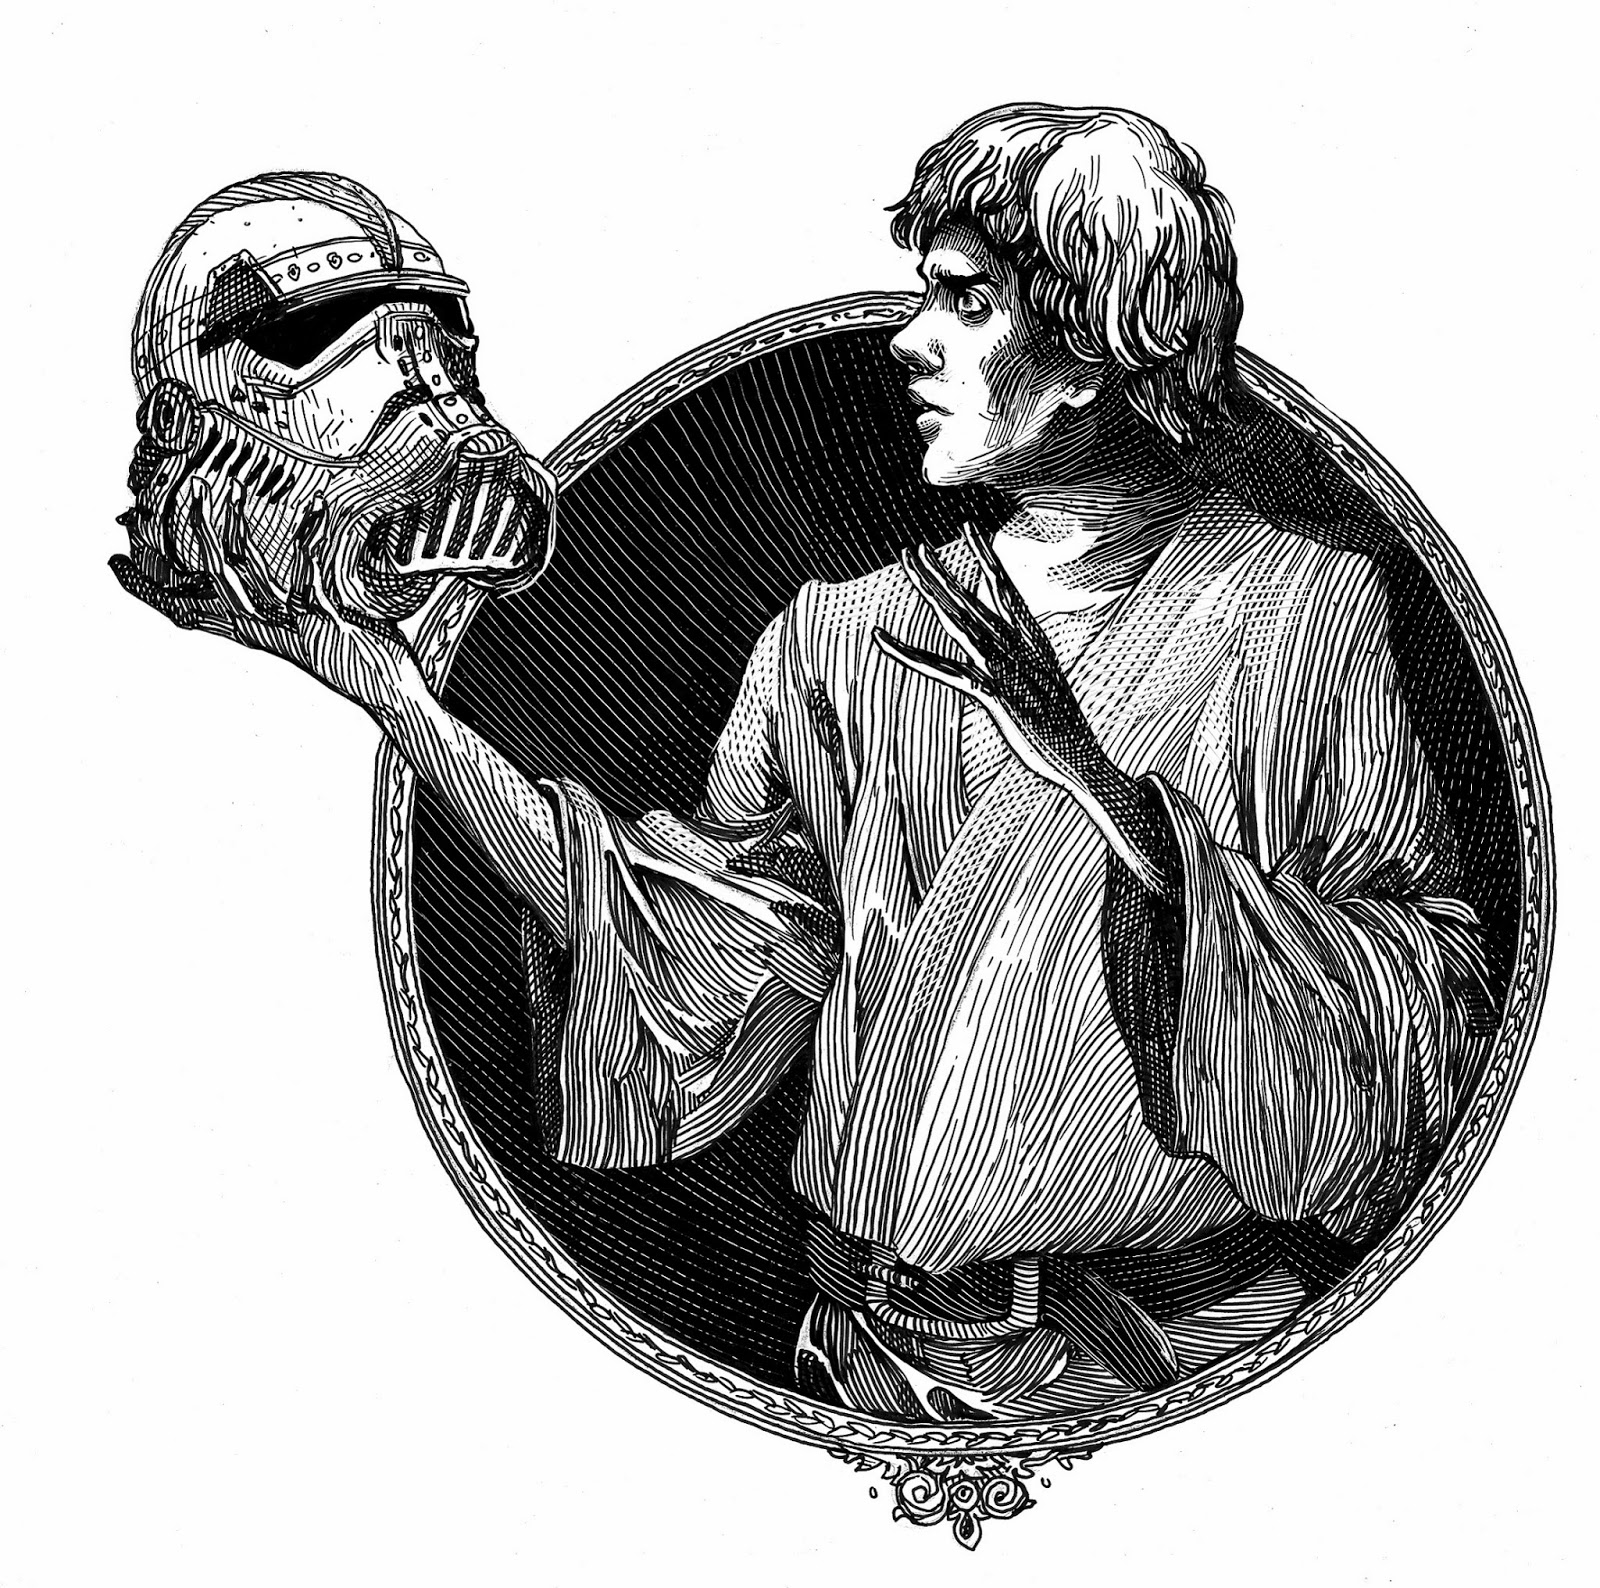 Luke Skywalker in Ian Doescher's William Shakespeare's Star Wars